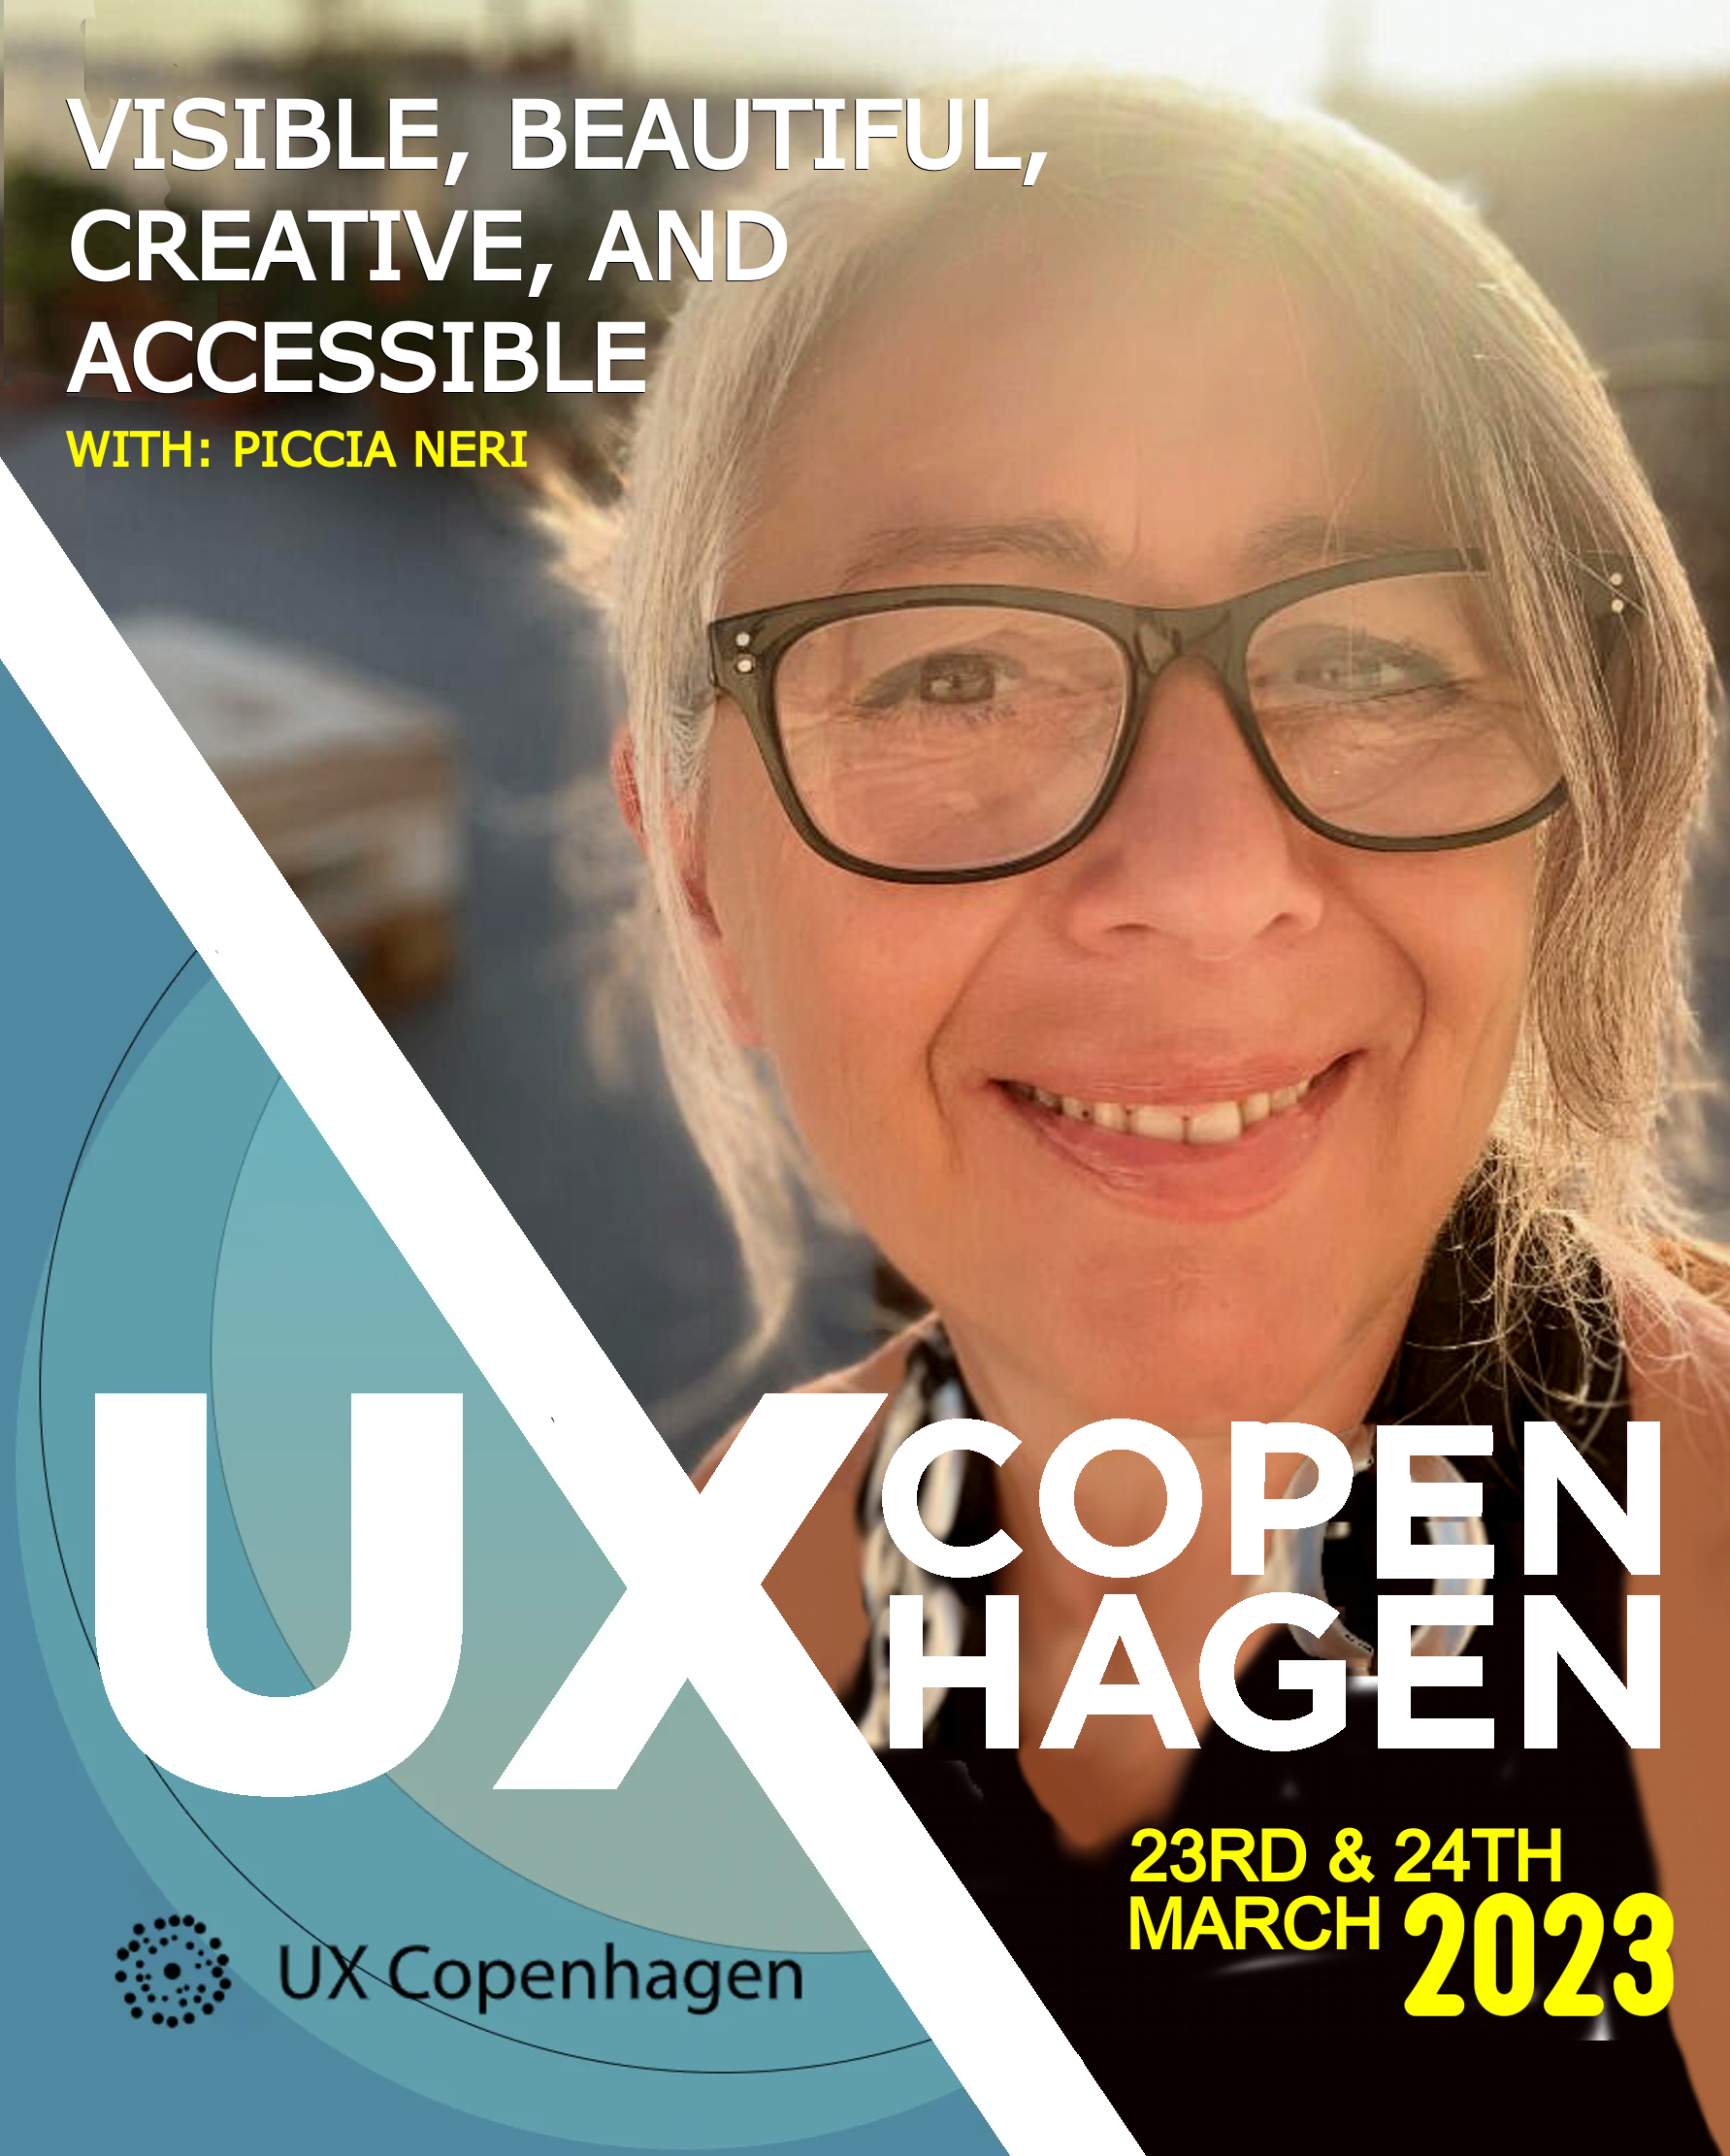 Piccia Neri speaking at UX Copenhagen 2023